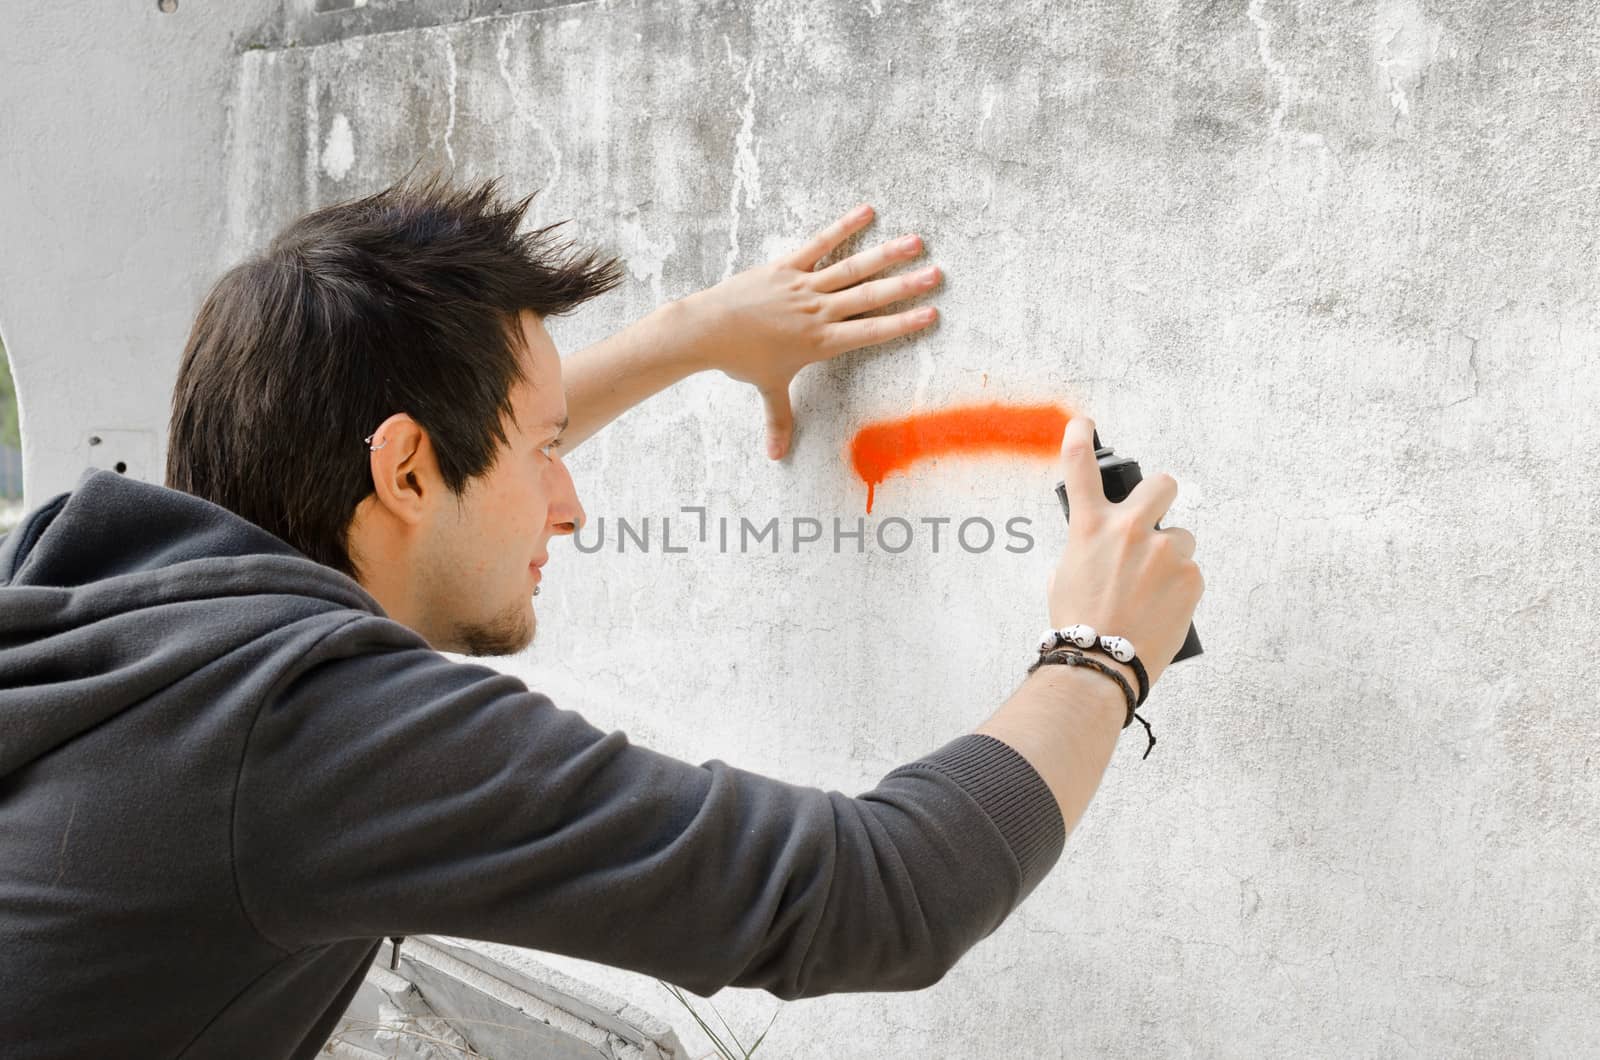 Graffiti artist about to start spraying a wall